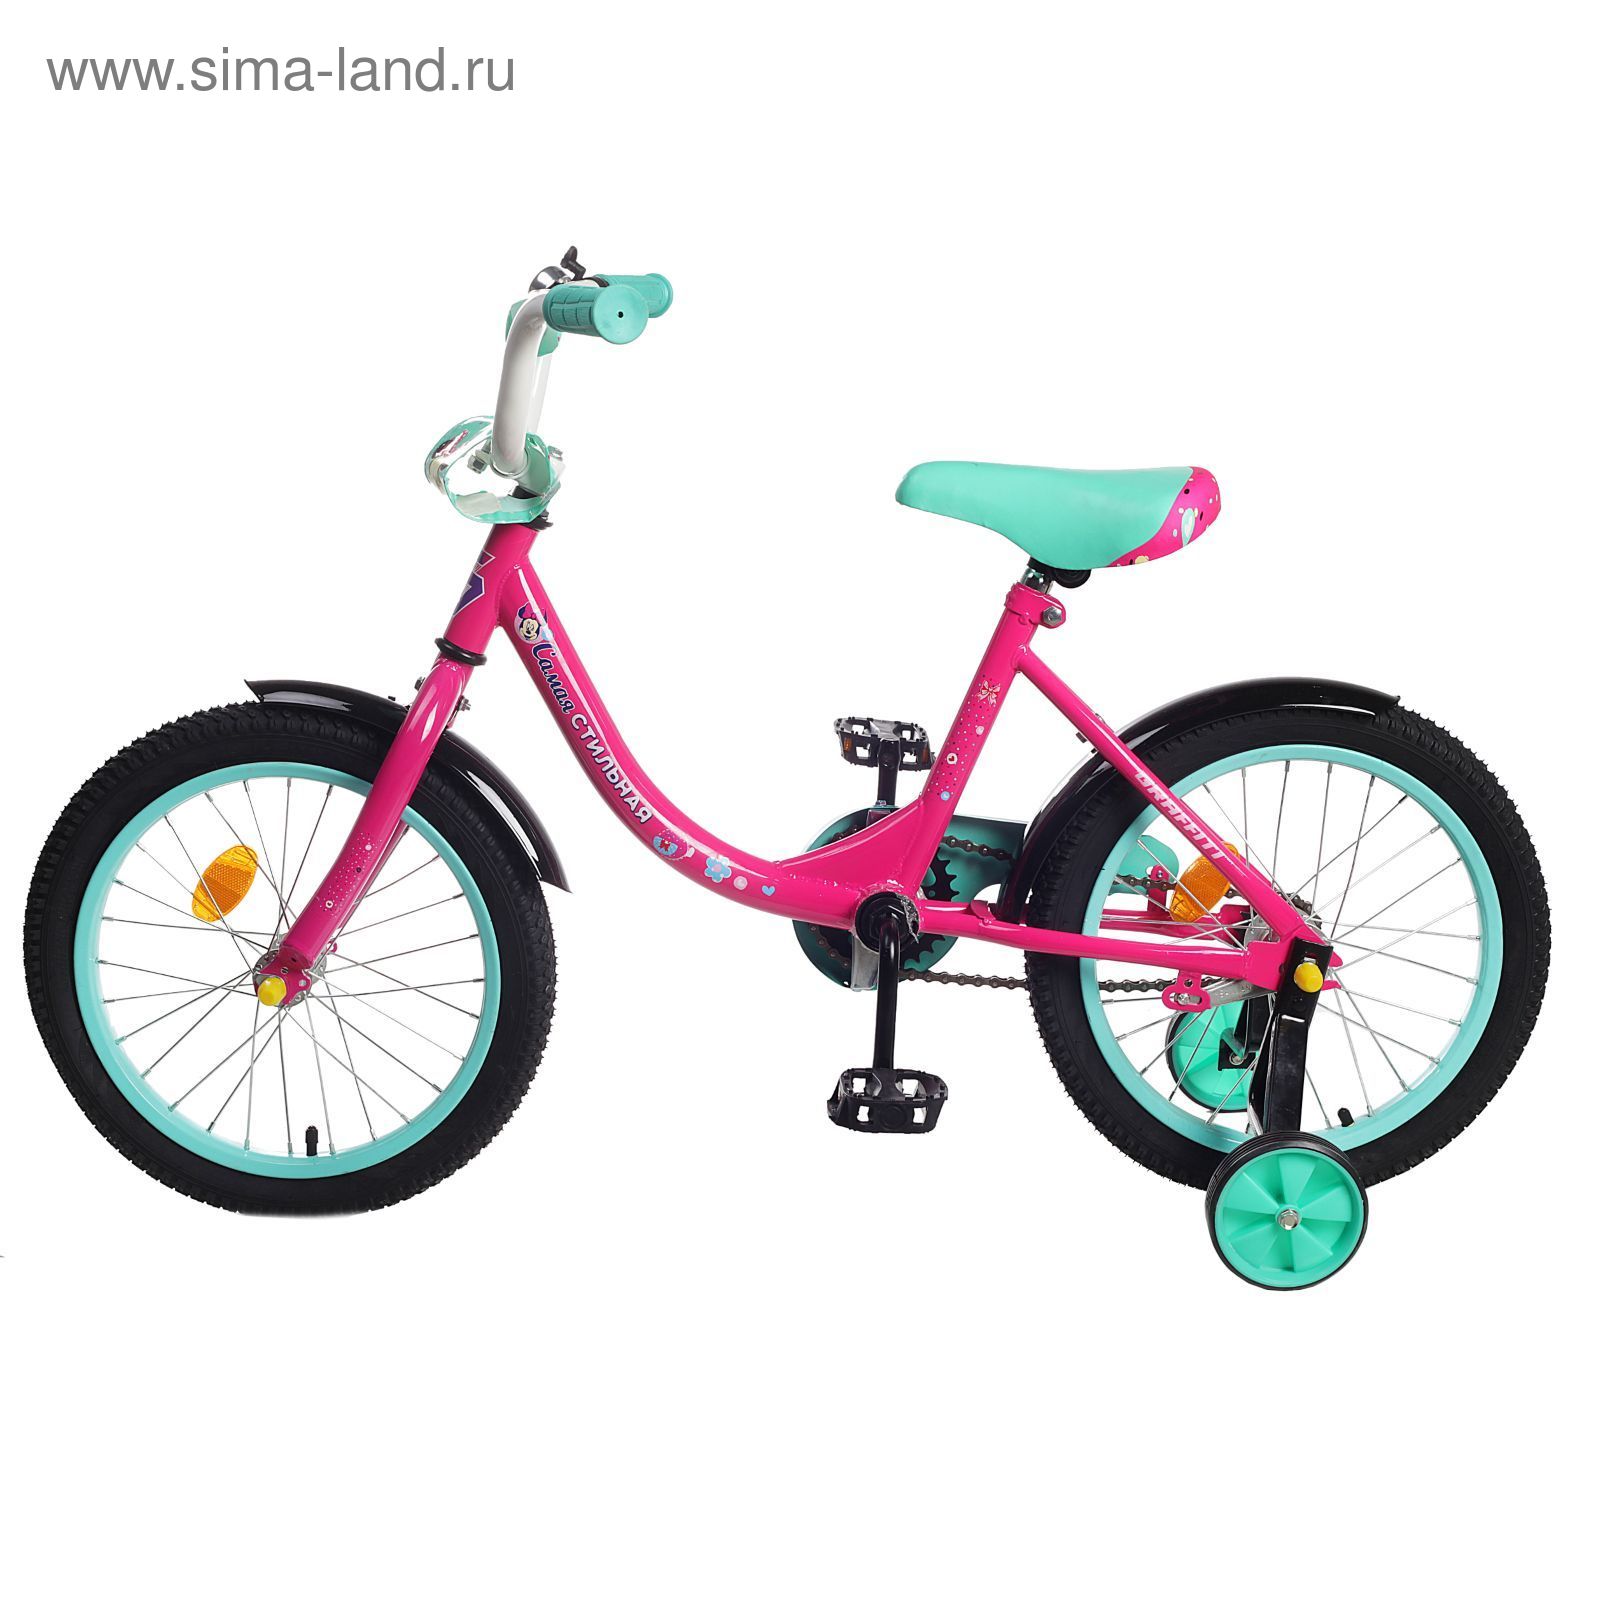 Велосипед двухколесный 16 GRAFFITI "Минни Маус", цвет: розовый